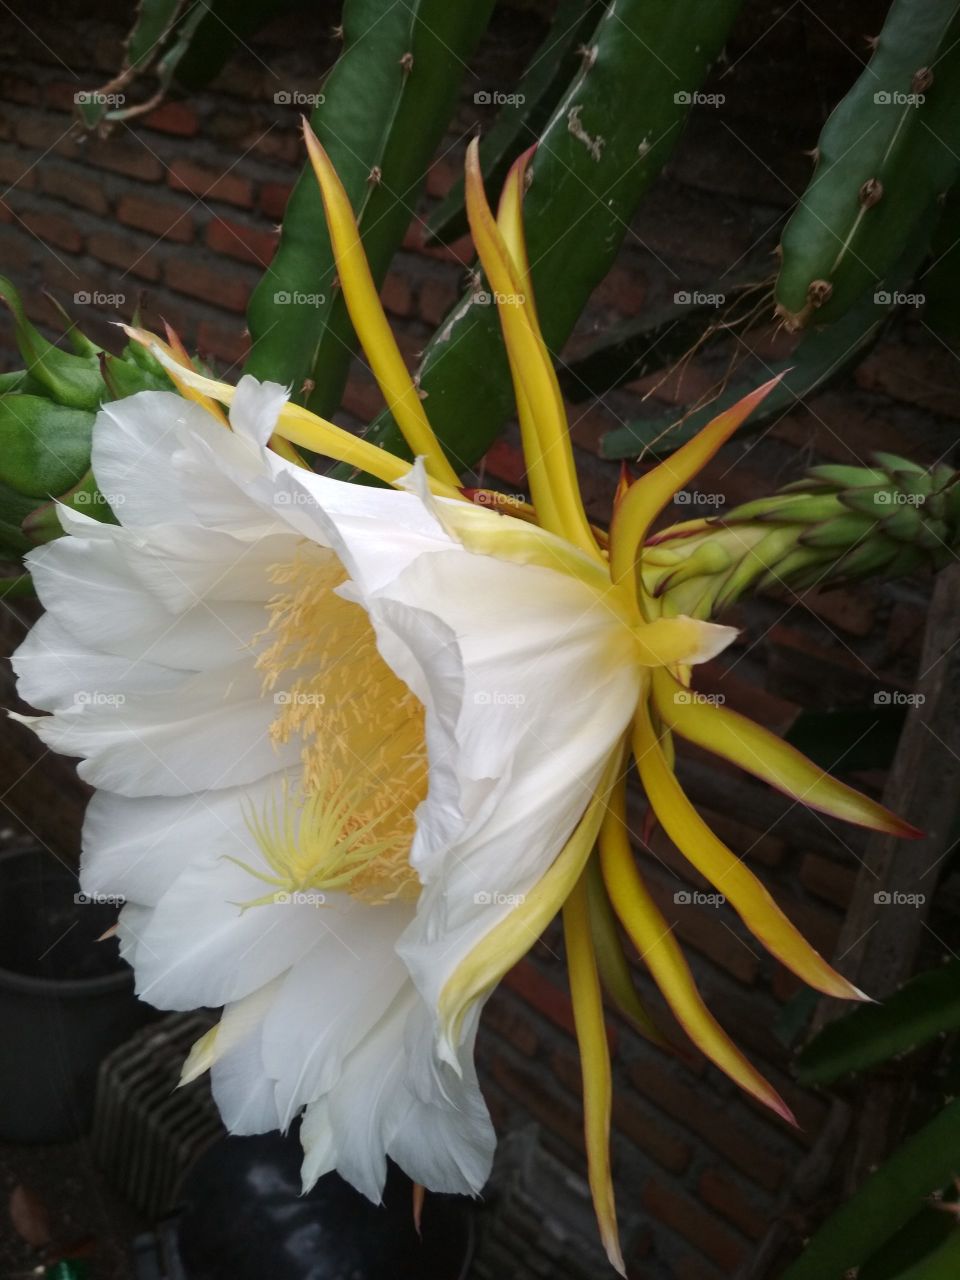 The flower of naga fruit